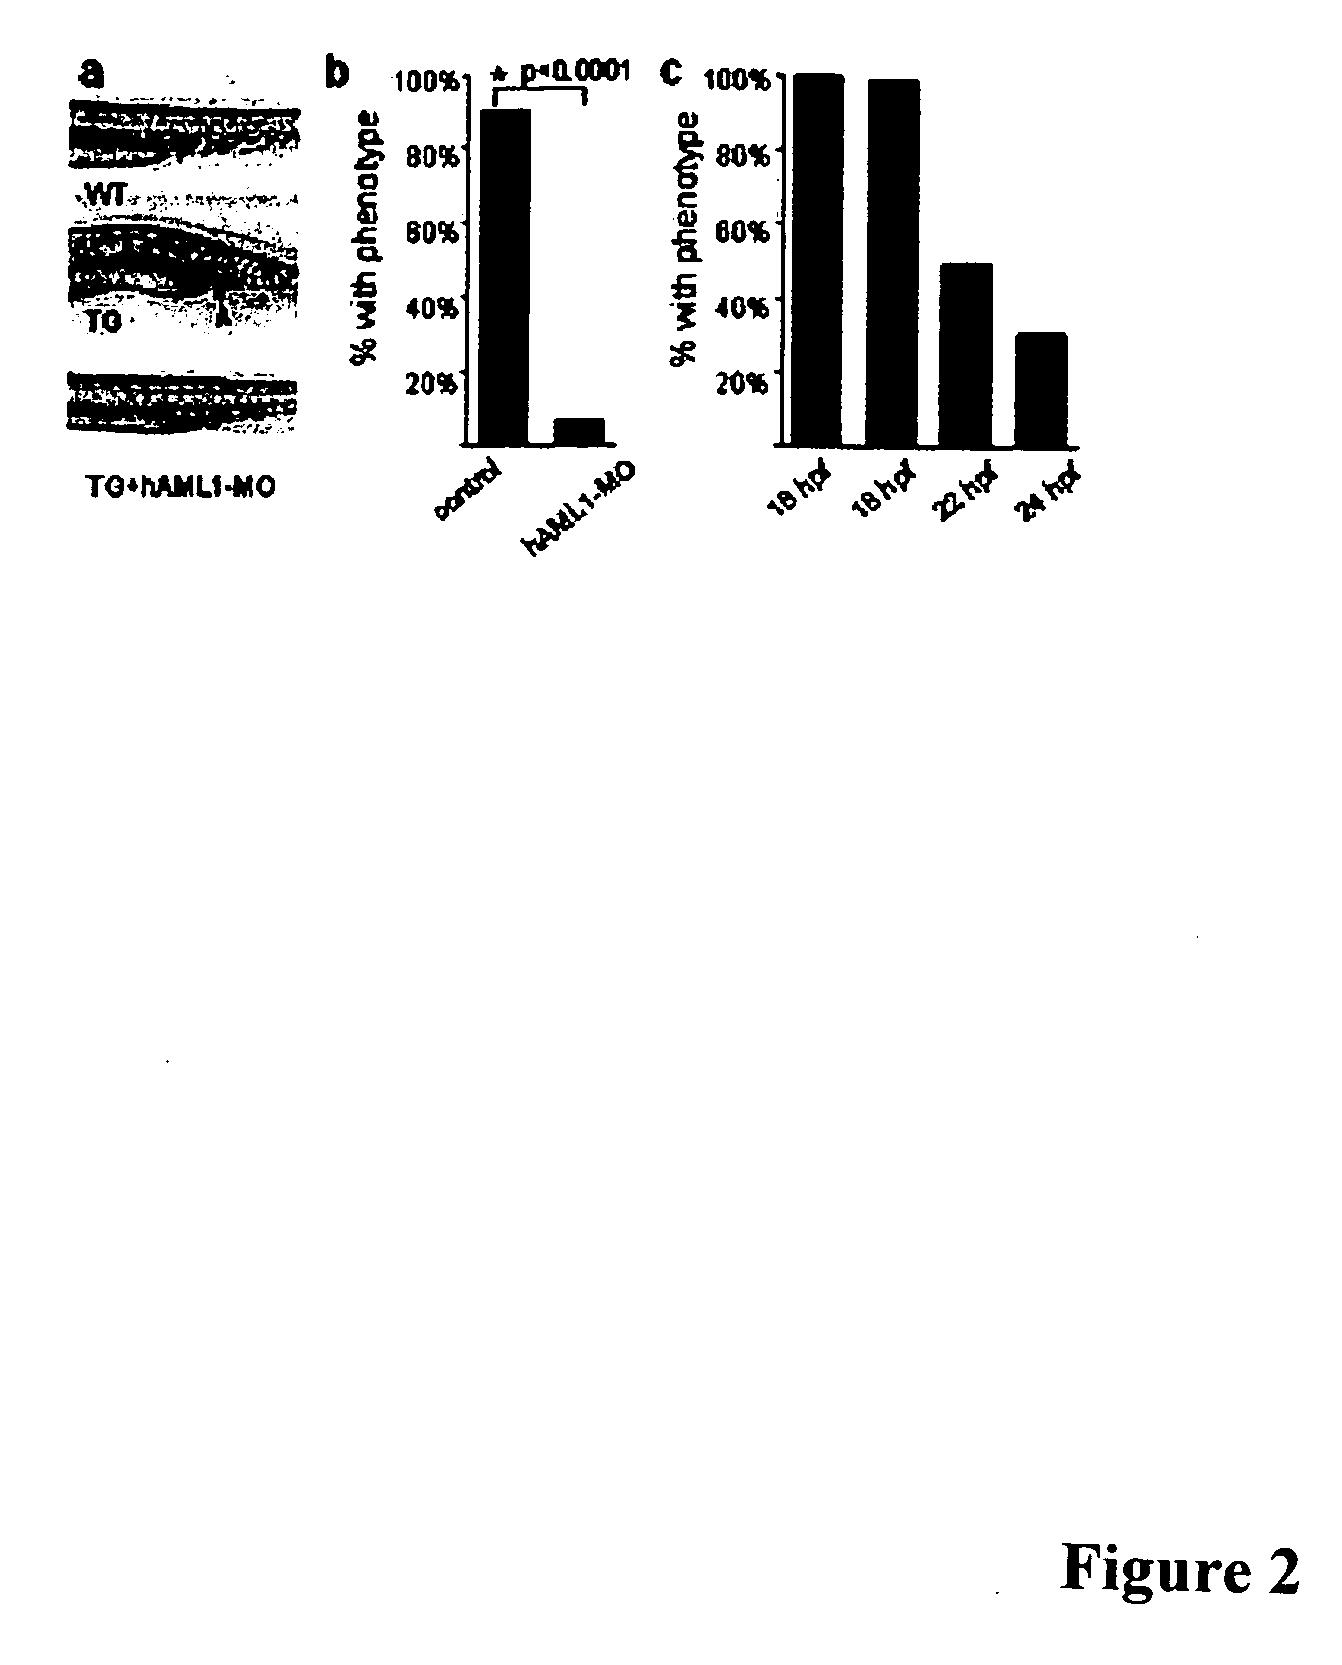 Zebrafish models of acute myelogenous leukemia